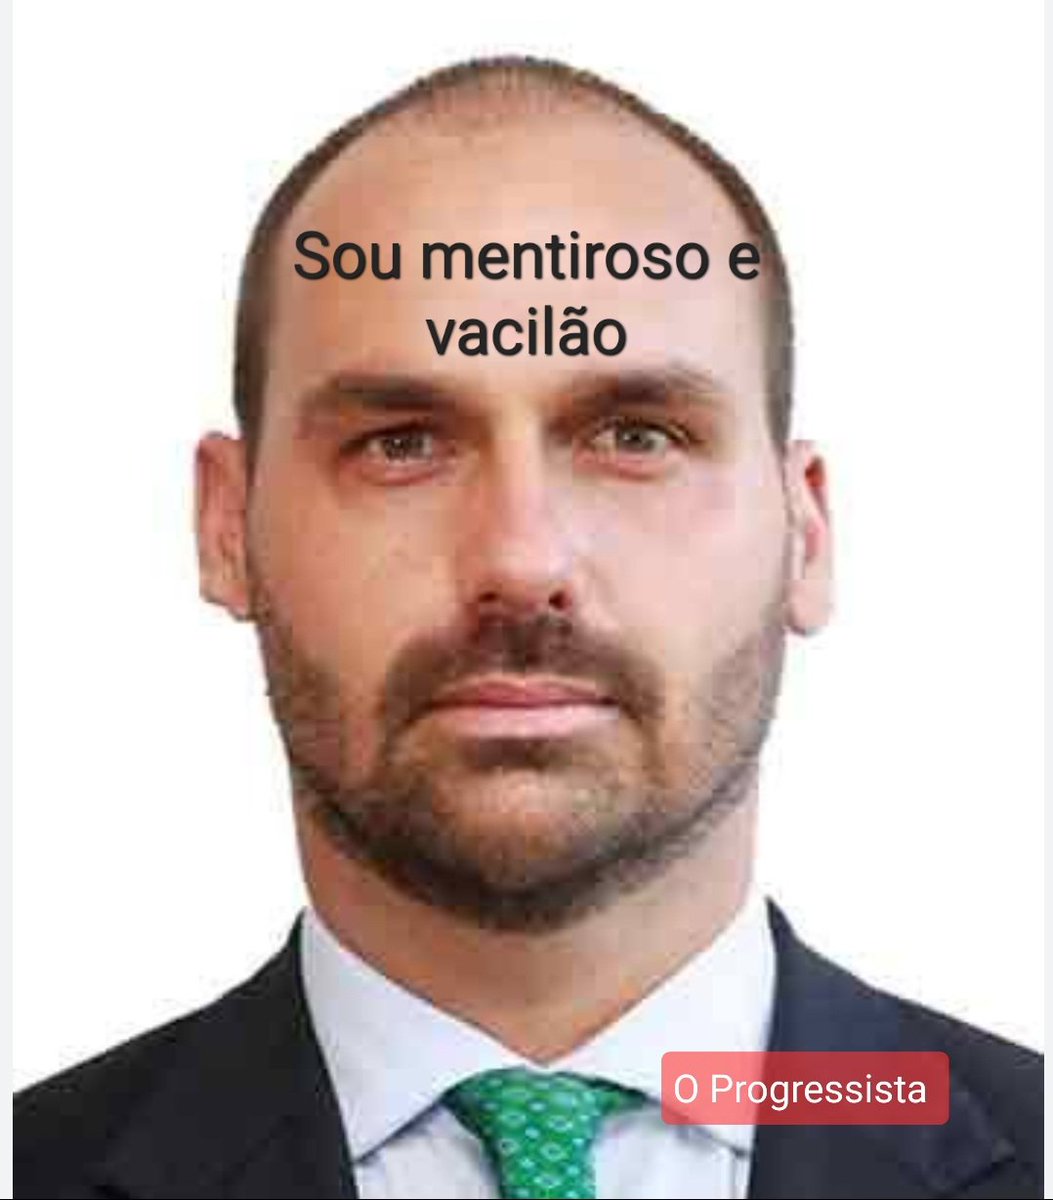 #LulaTudoPeloBrasil  Mentiroso, Vacilão.  e Vagabaaaaaaaaaaaaaaaaaaaaaaaaaa.   #MML.